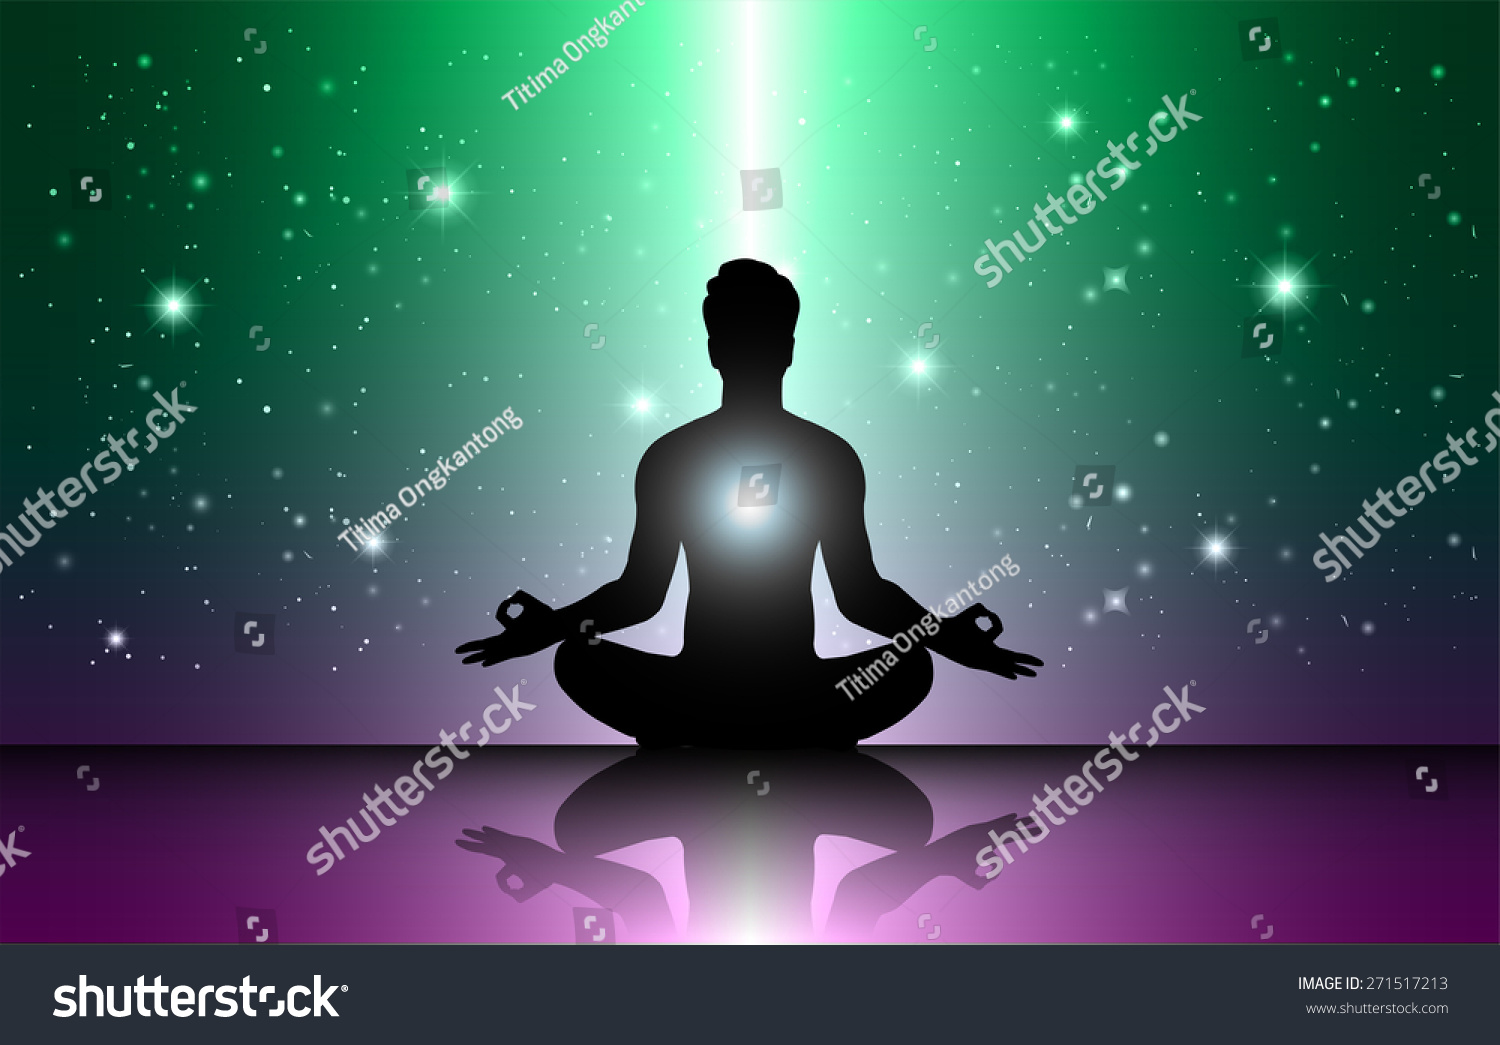 Man Meditation Dark Green Purple Sparkling Stock Vector (Royalty Free ...